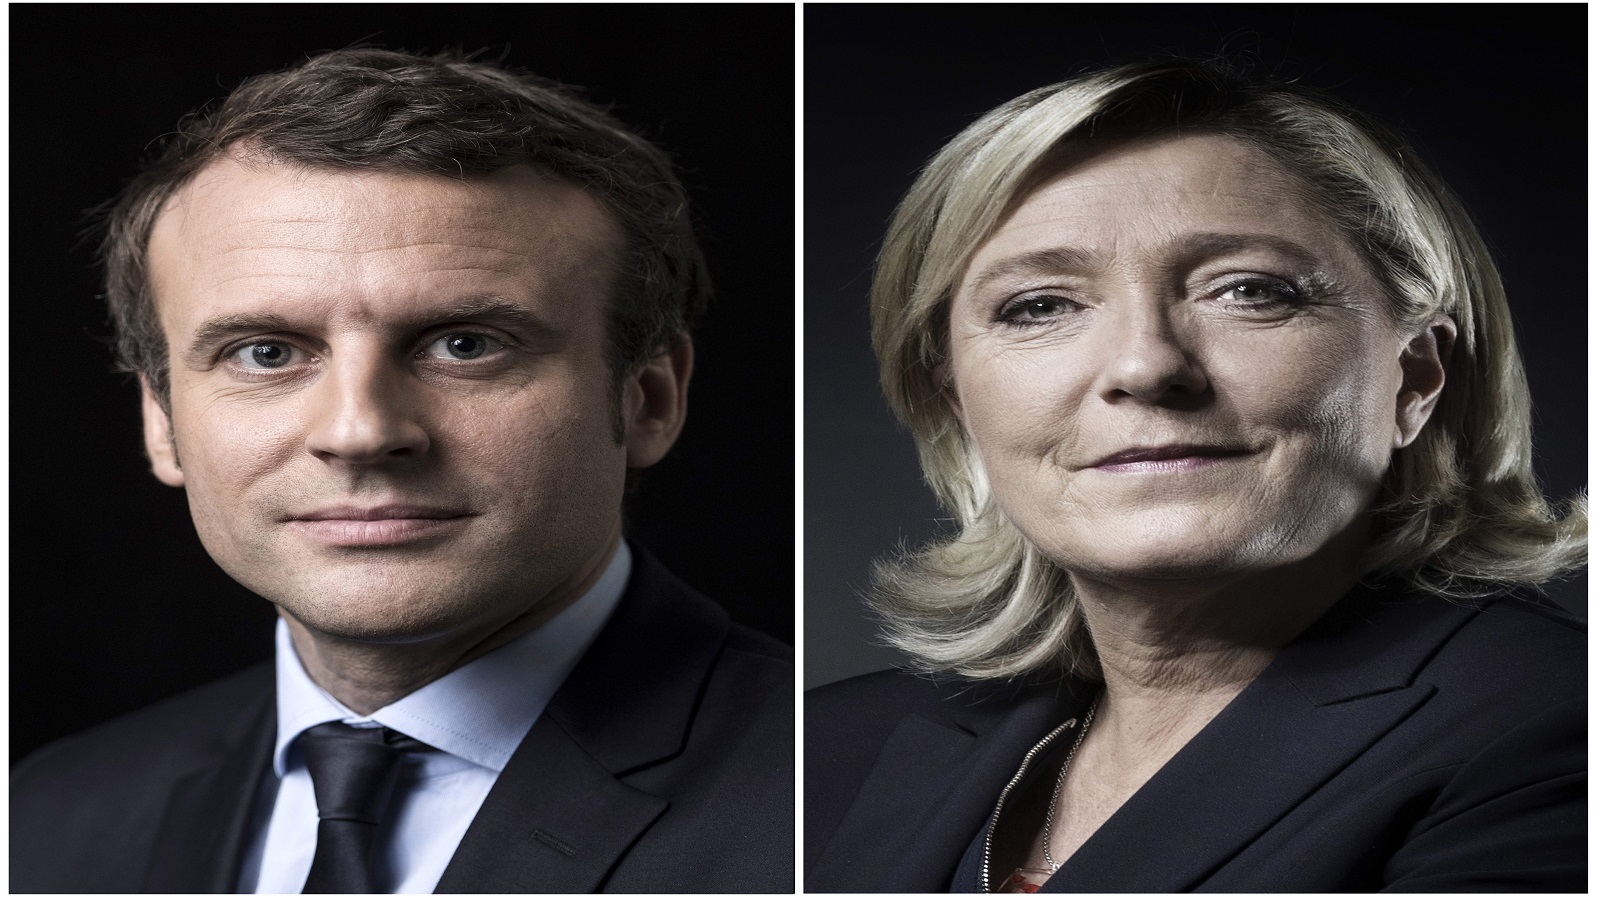 صدقت إستطلاعات الرأي:الرئاسة الفرنسية بين ماكرون ولوبان